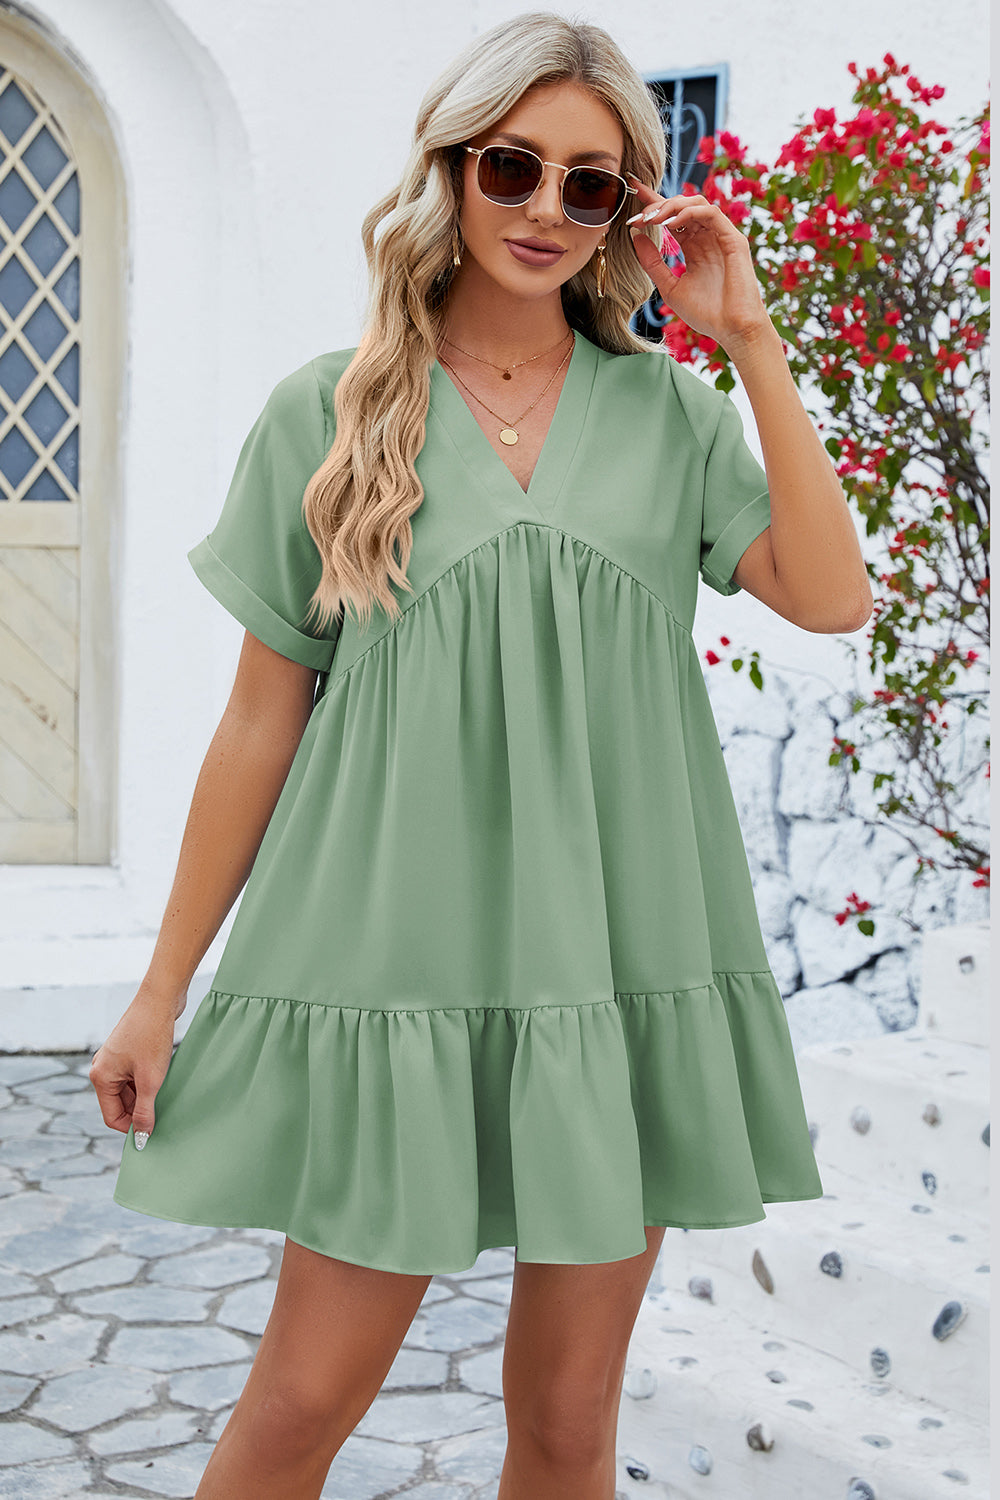 Ruched Tiered V-Neck Short Sleeve Mini Dress (5 Colors) Dress Krazy Heart Designs Boutique Gum Leaf S 